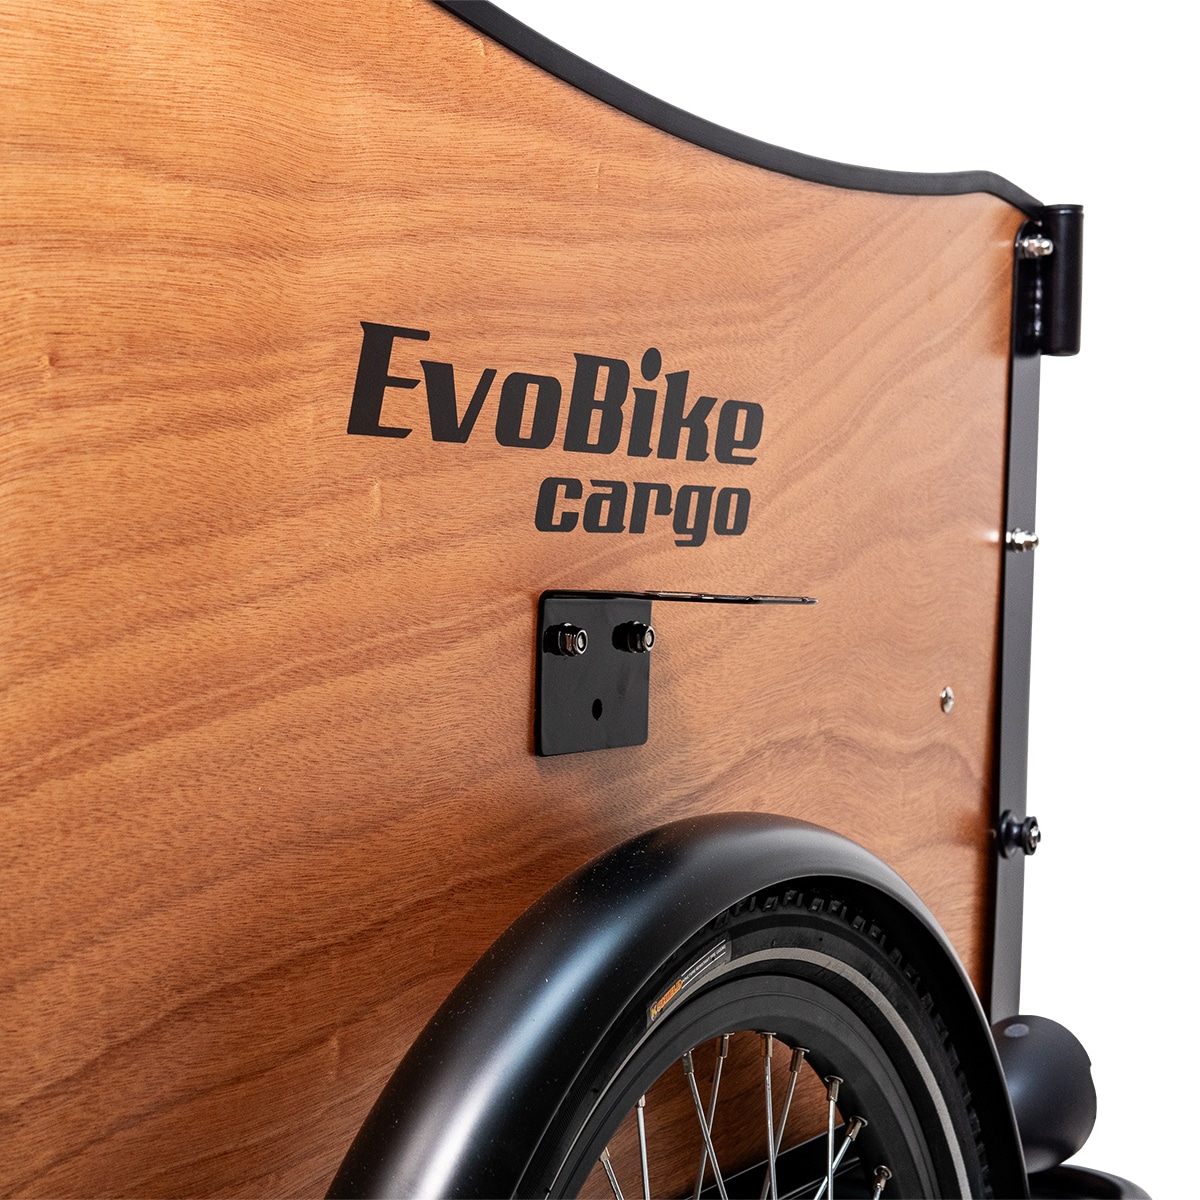 Lådcykel EvoBike Cargo Classic